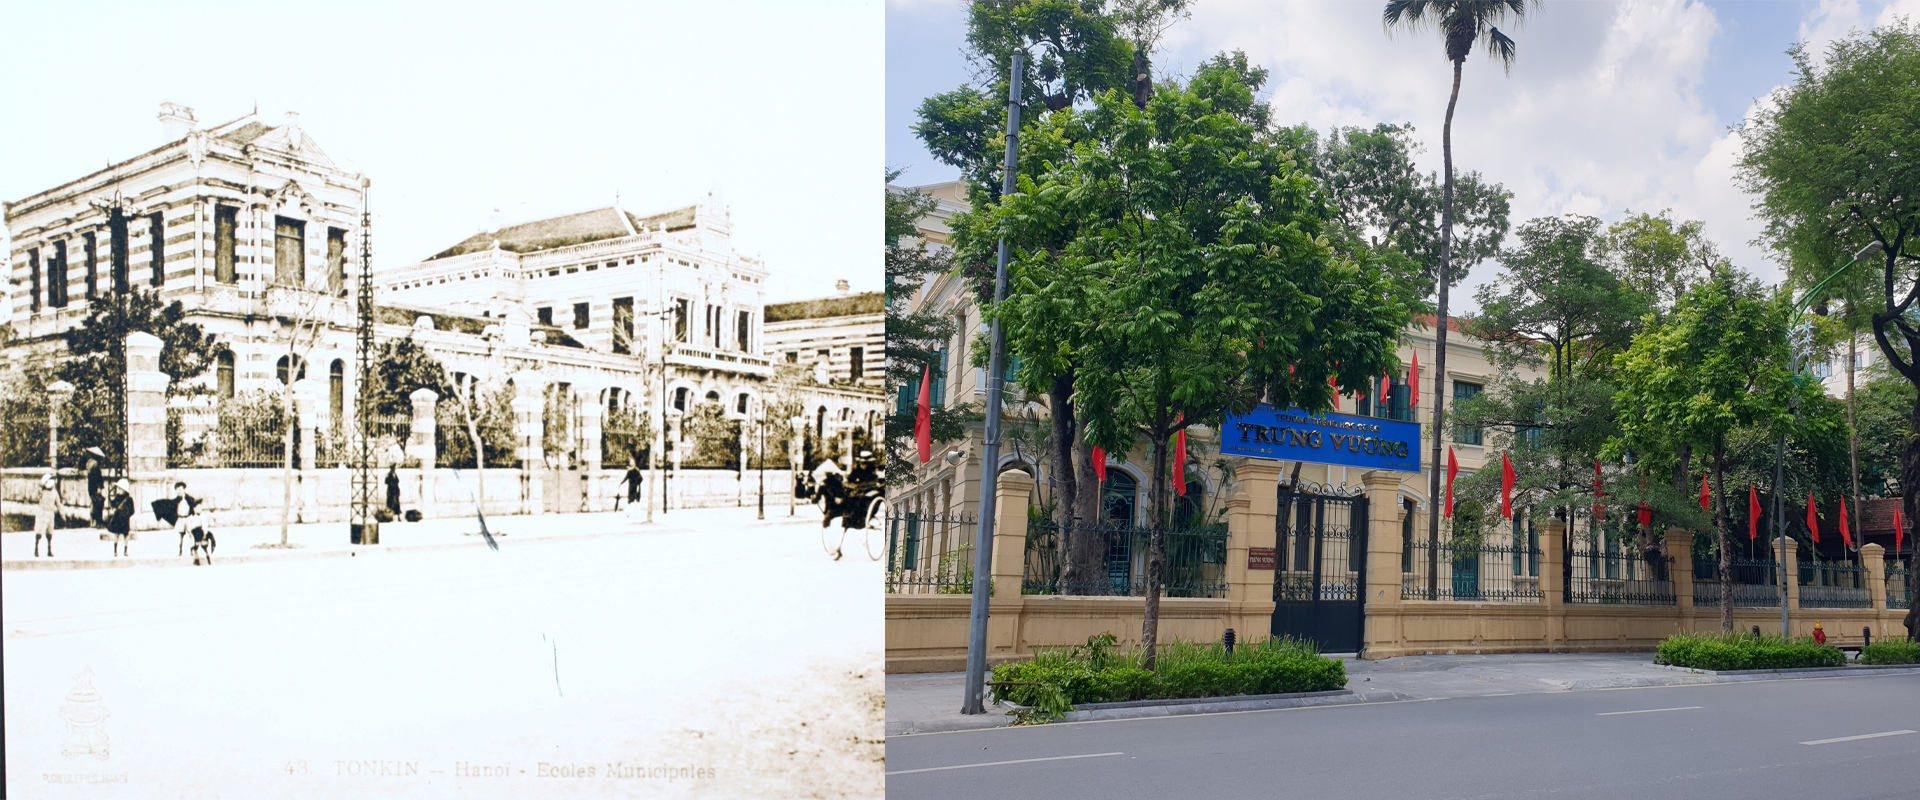 Những hình ảnh thú vị về sự đổi thay của Hà Nội sau 100 năm - Ảnh 10.